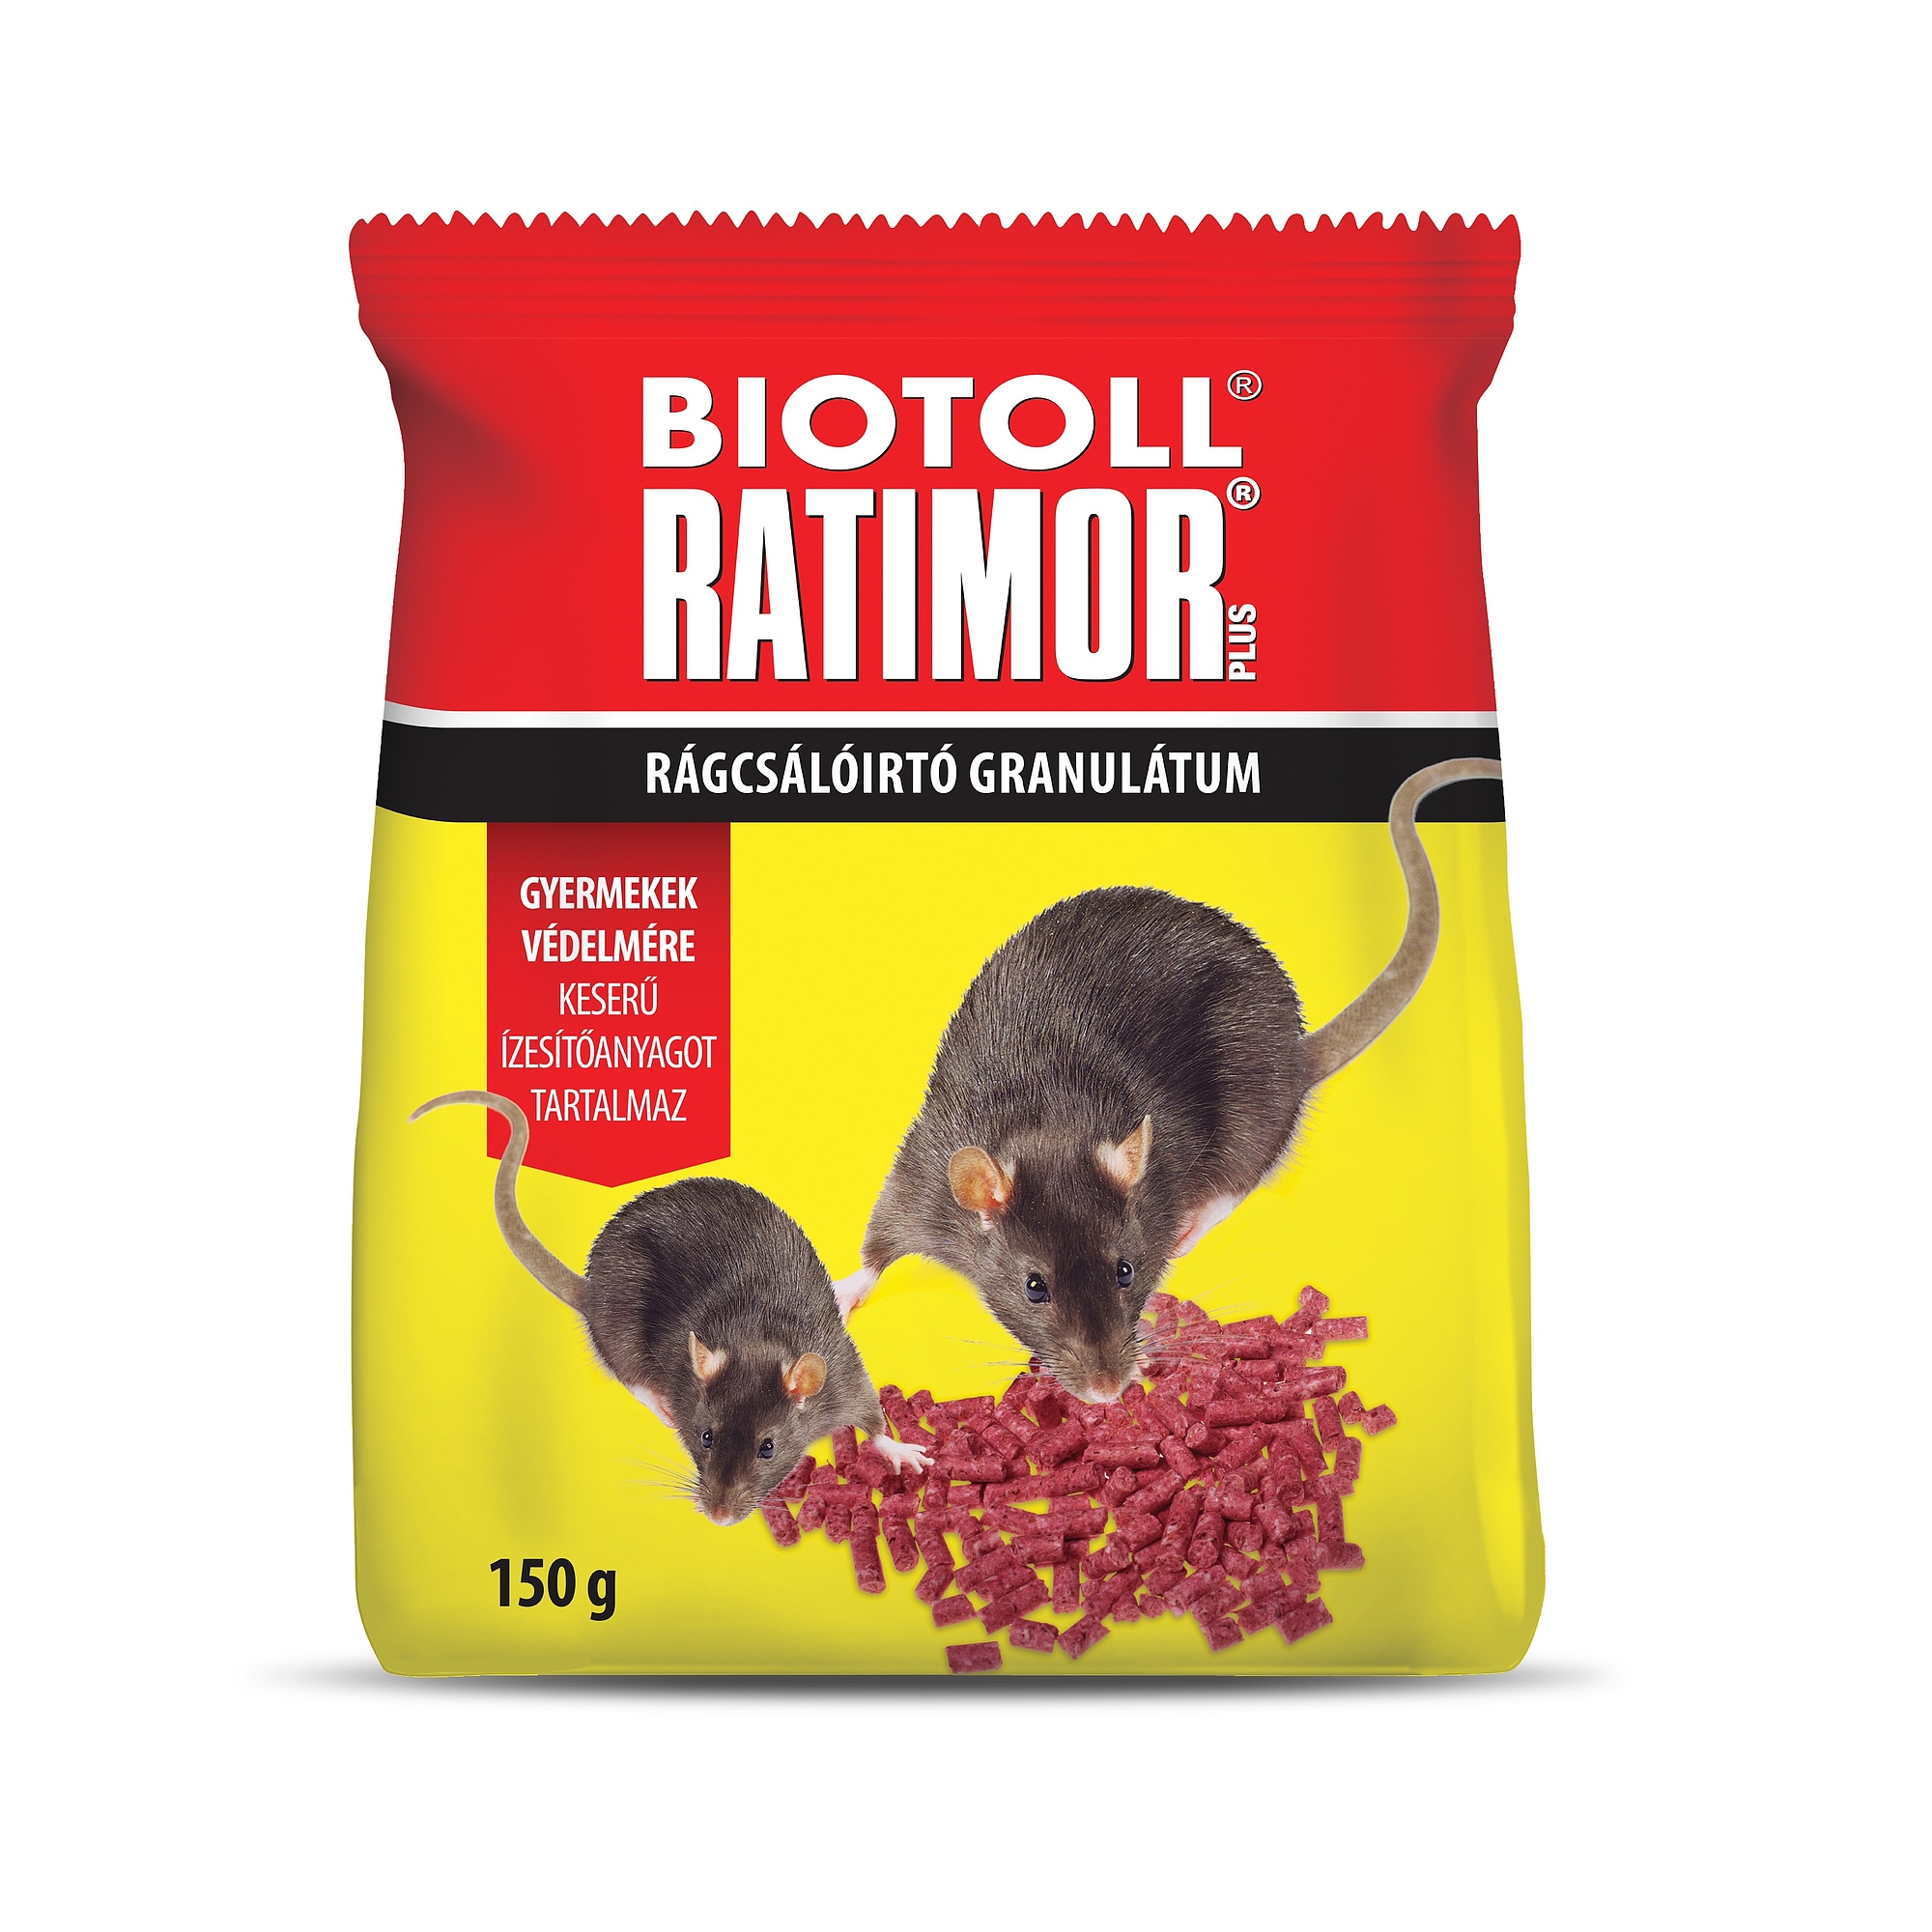 Biotoll Ratimor + Pel 150g Duplex 52828